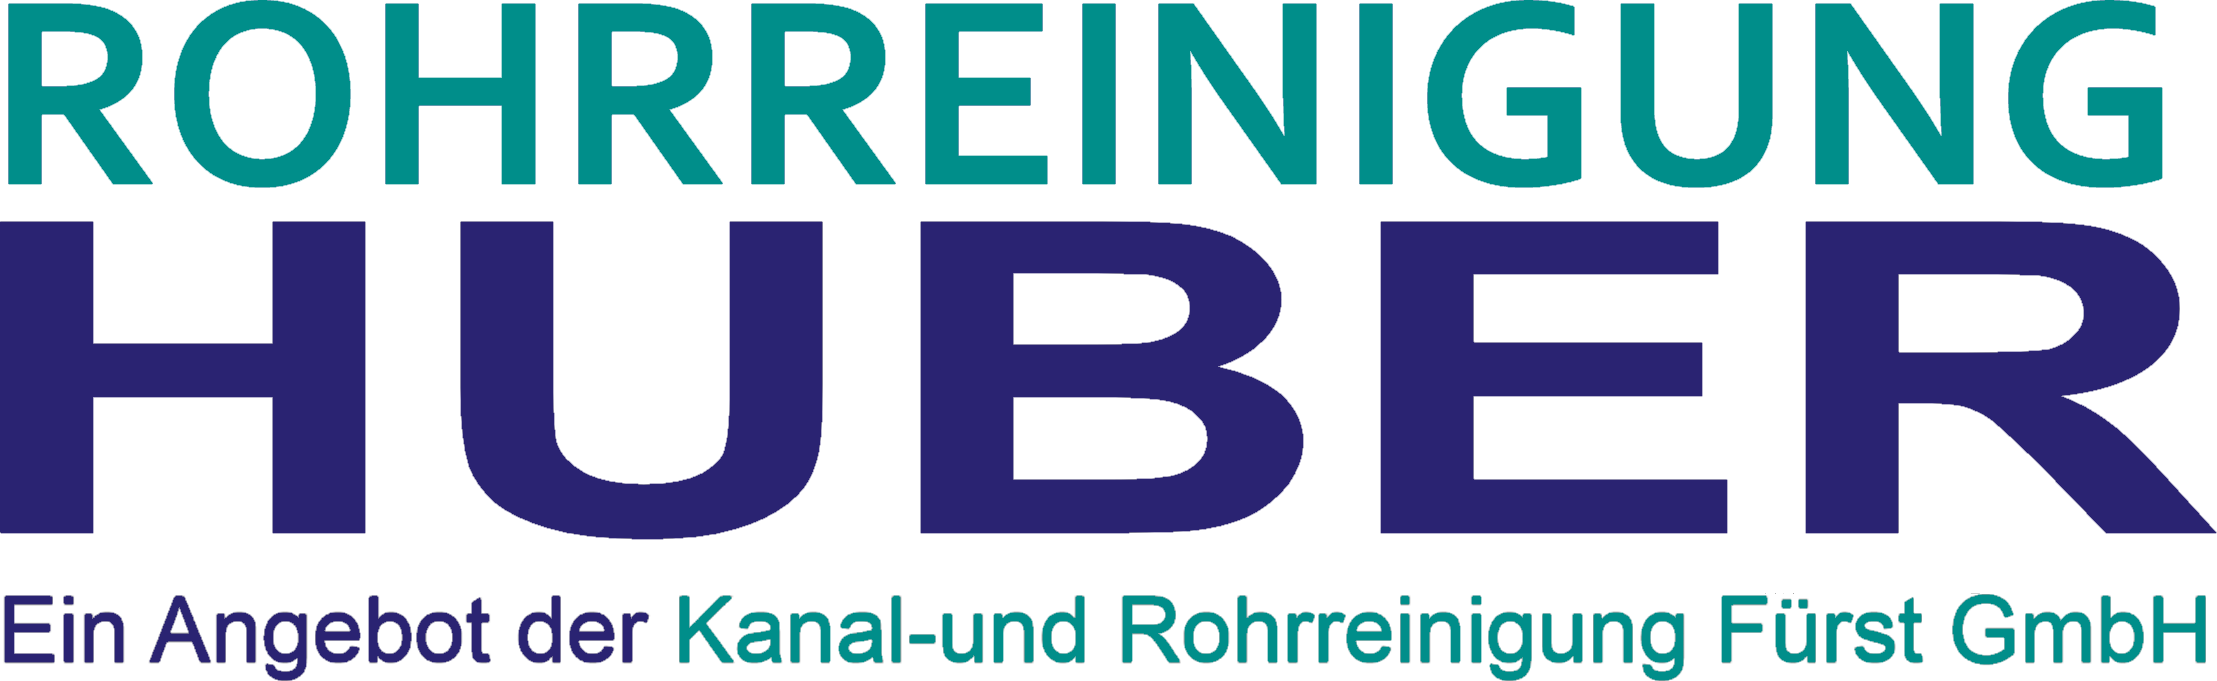 Rohrreinigung Huber - Rohrreinigung Reichsthal